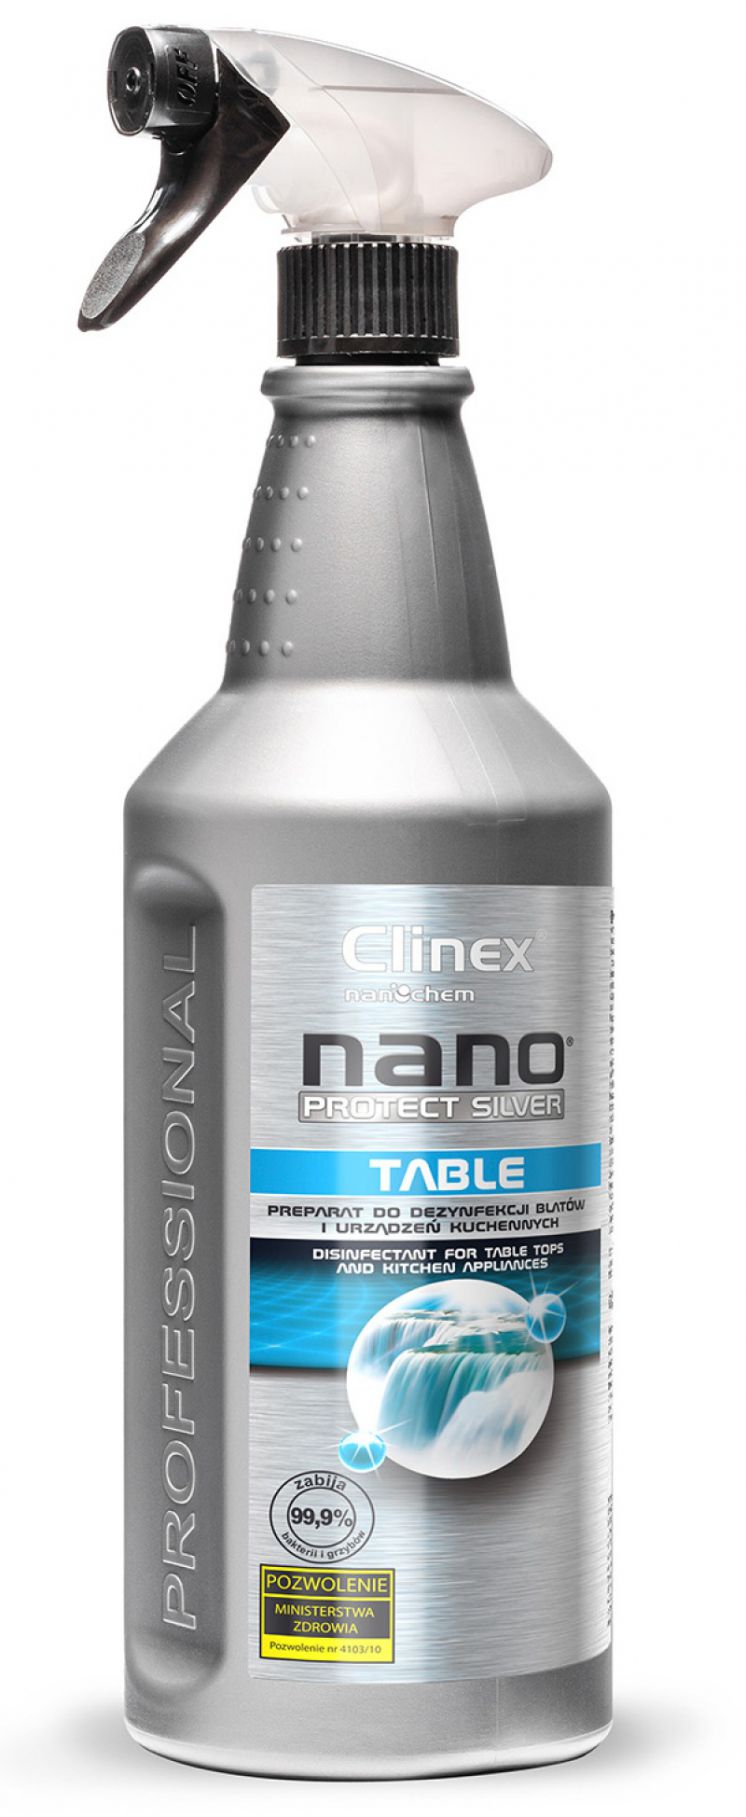 Uniwersalny płyn do dezynfekcji blatów CLINEX Nano Protect Silver Table 1L